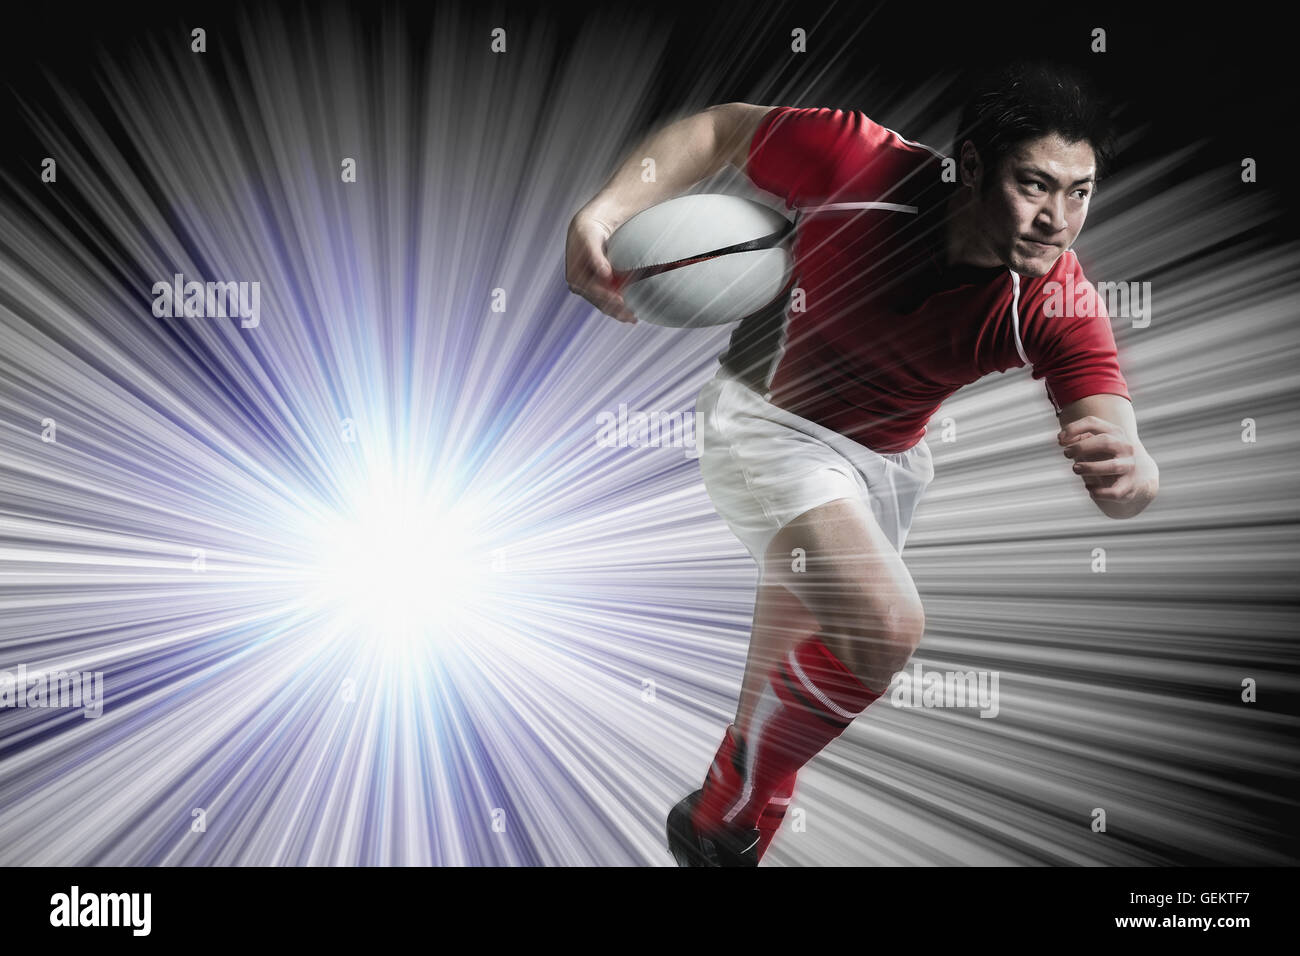 Portrait de joueur de rugby japonais tournant avec ball Banque D'Images